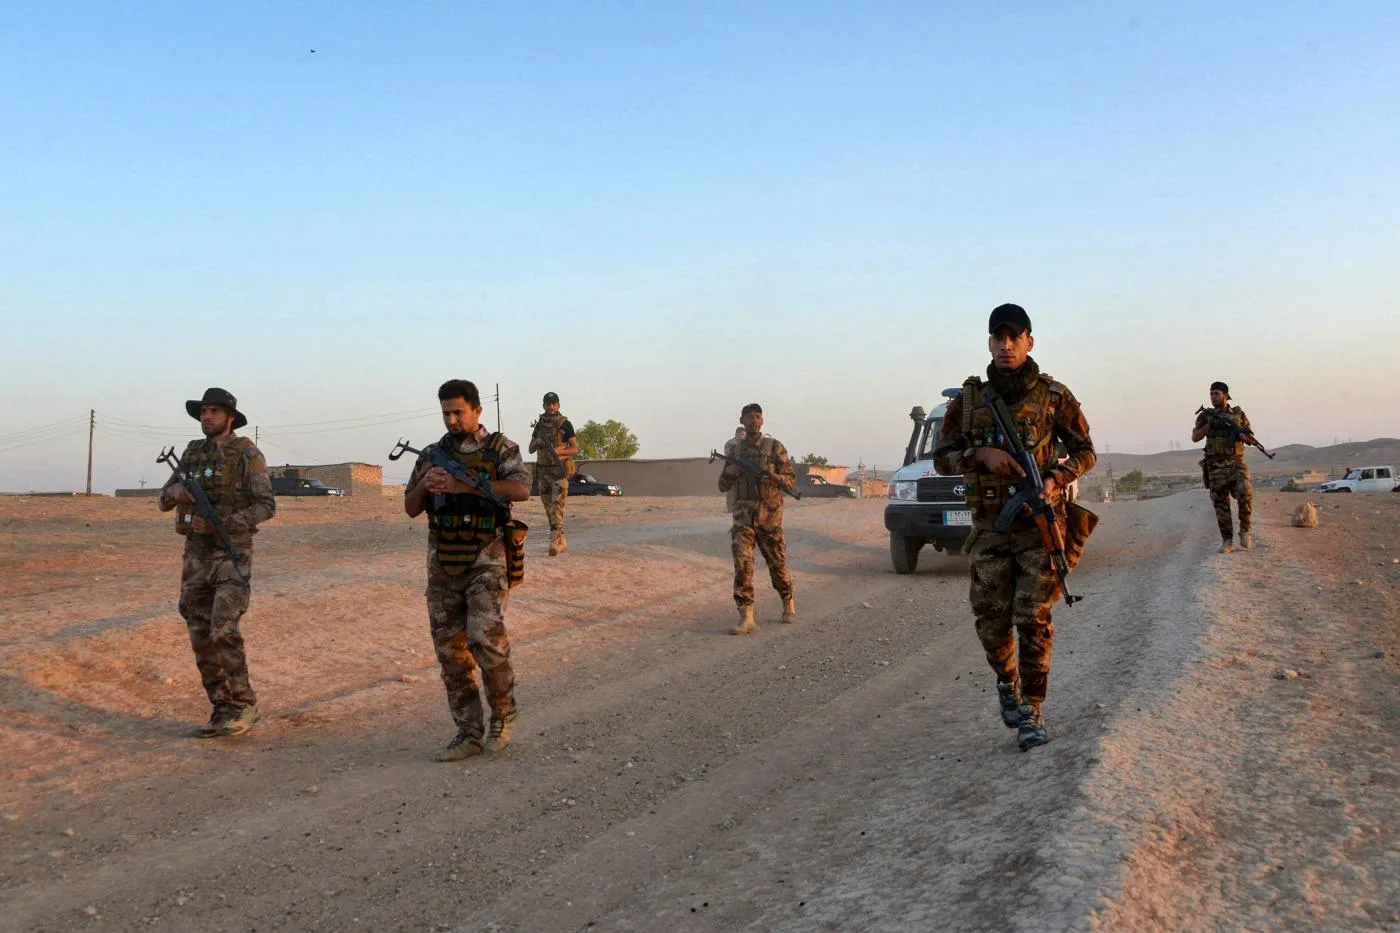 دورية للقوات العراقية في عملية عسكرية جنوب وغرب الموصل بحثًا عن مقاتلي تنظيم الدولة